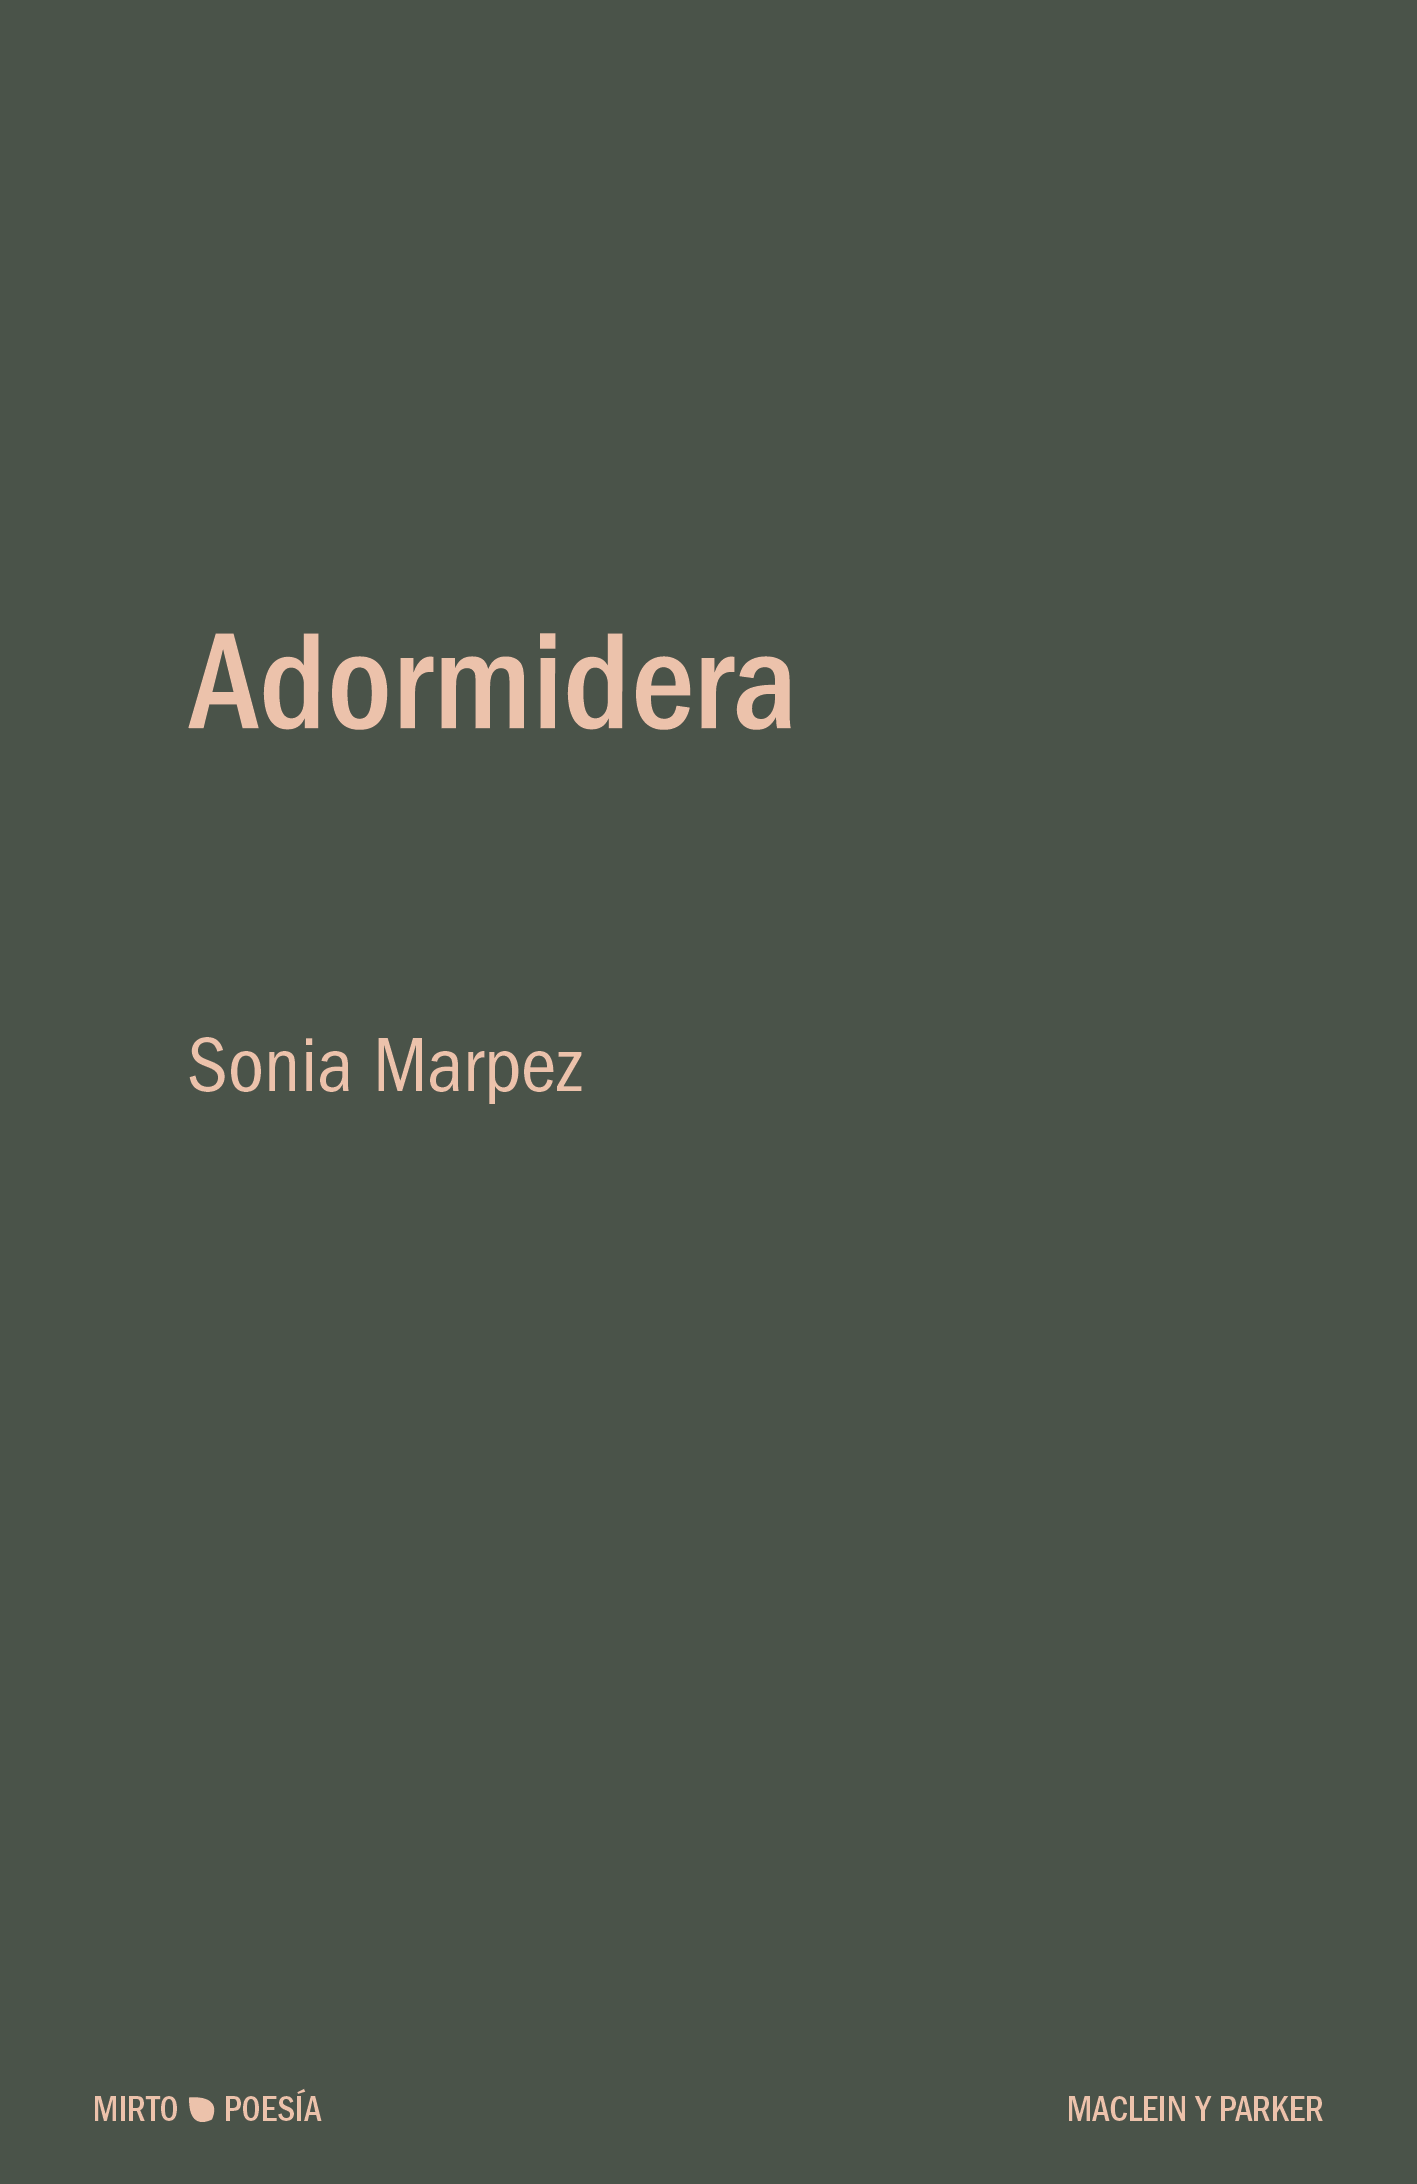 Adormidera | Sonia Marpez | Maclein y Parker | Editorial de libros independiente | Venta de libros online